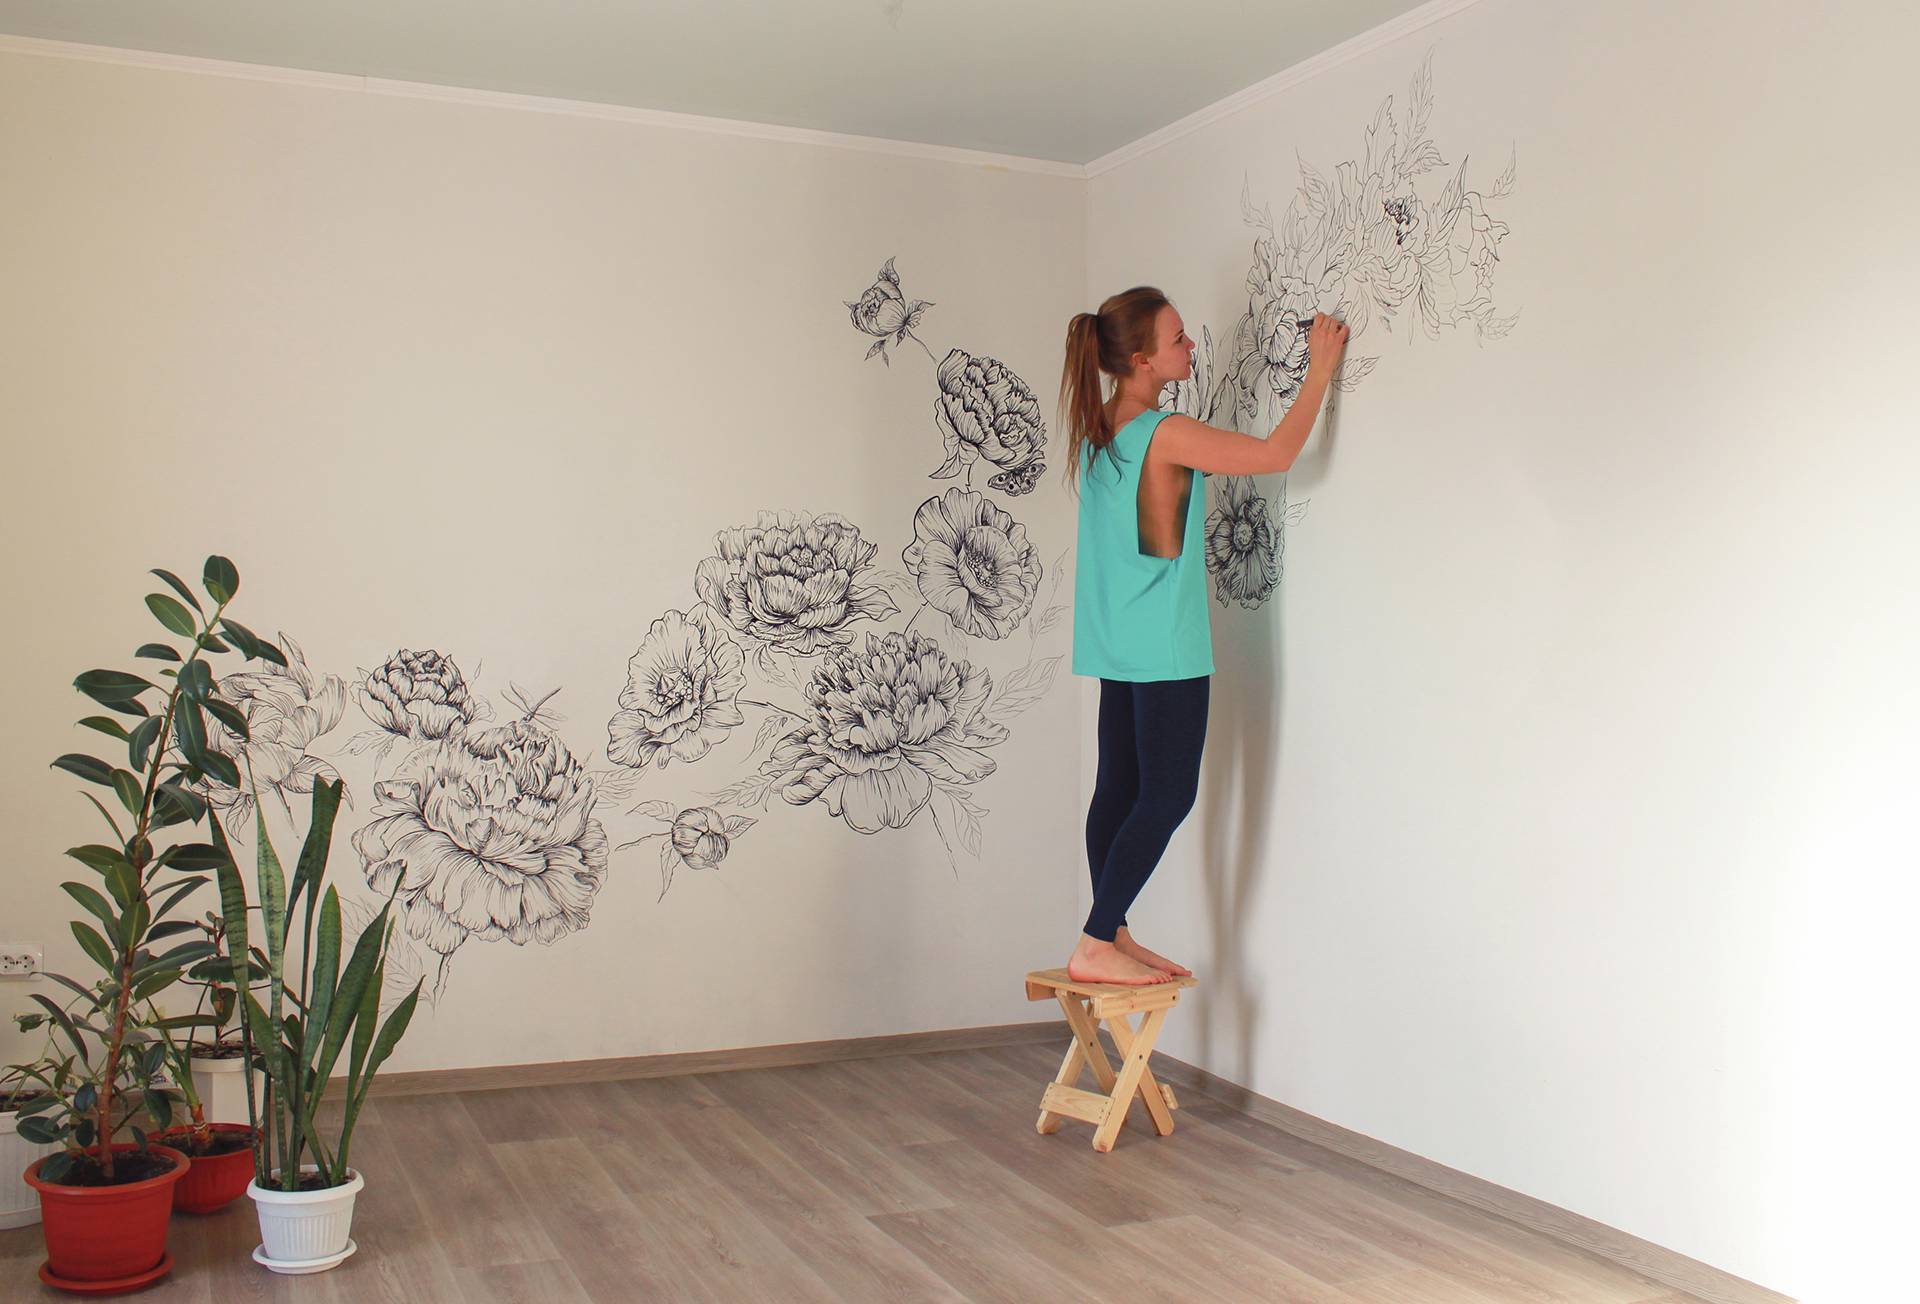 Рисование на стенах: с чего начать и как выбрать краски? (+26 фото)